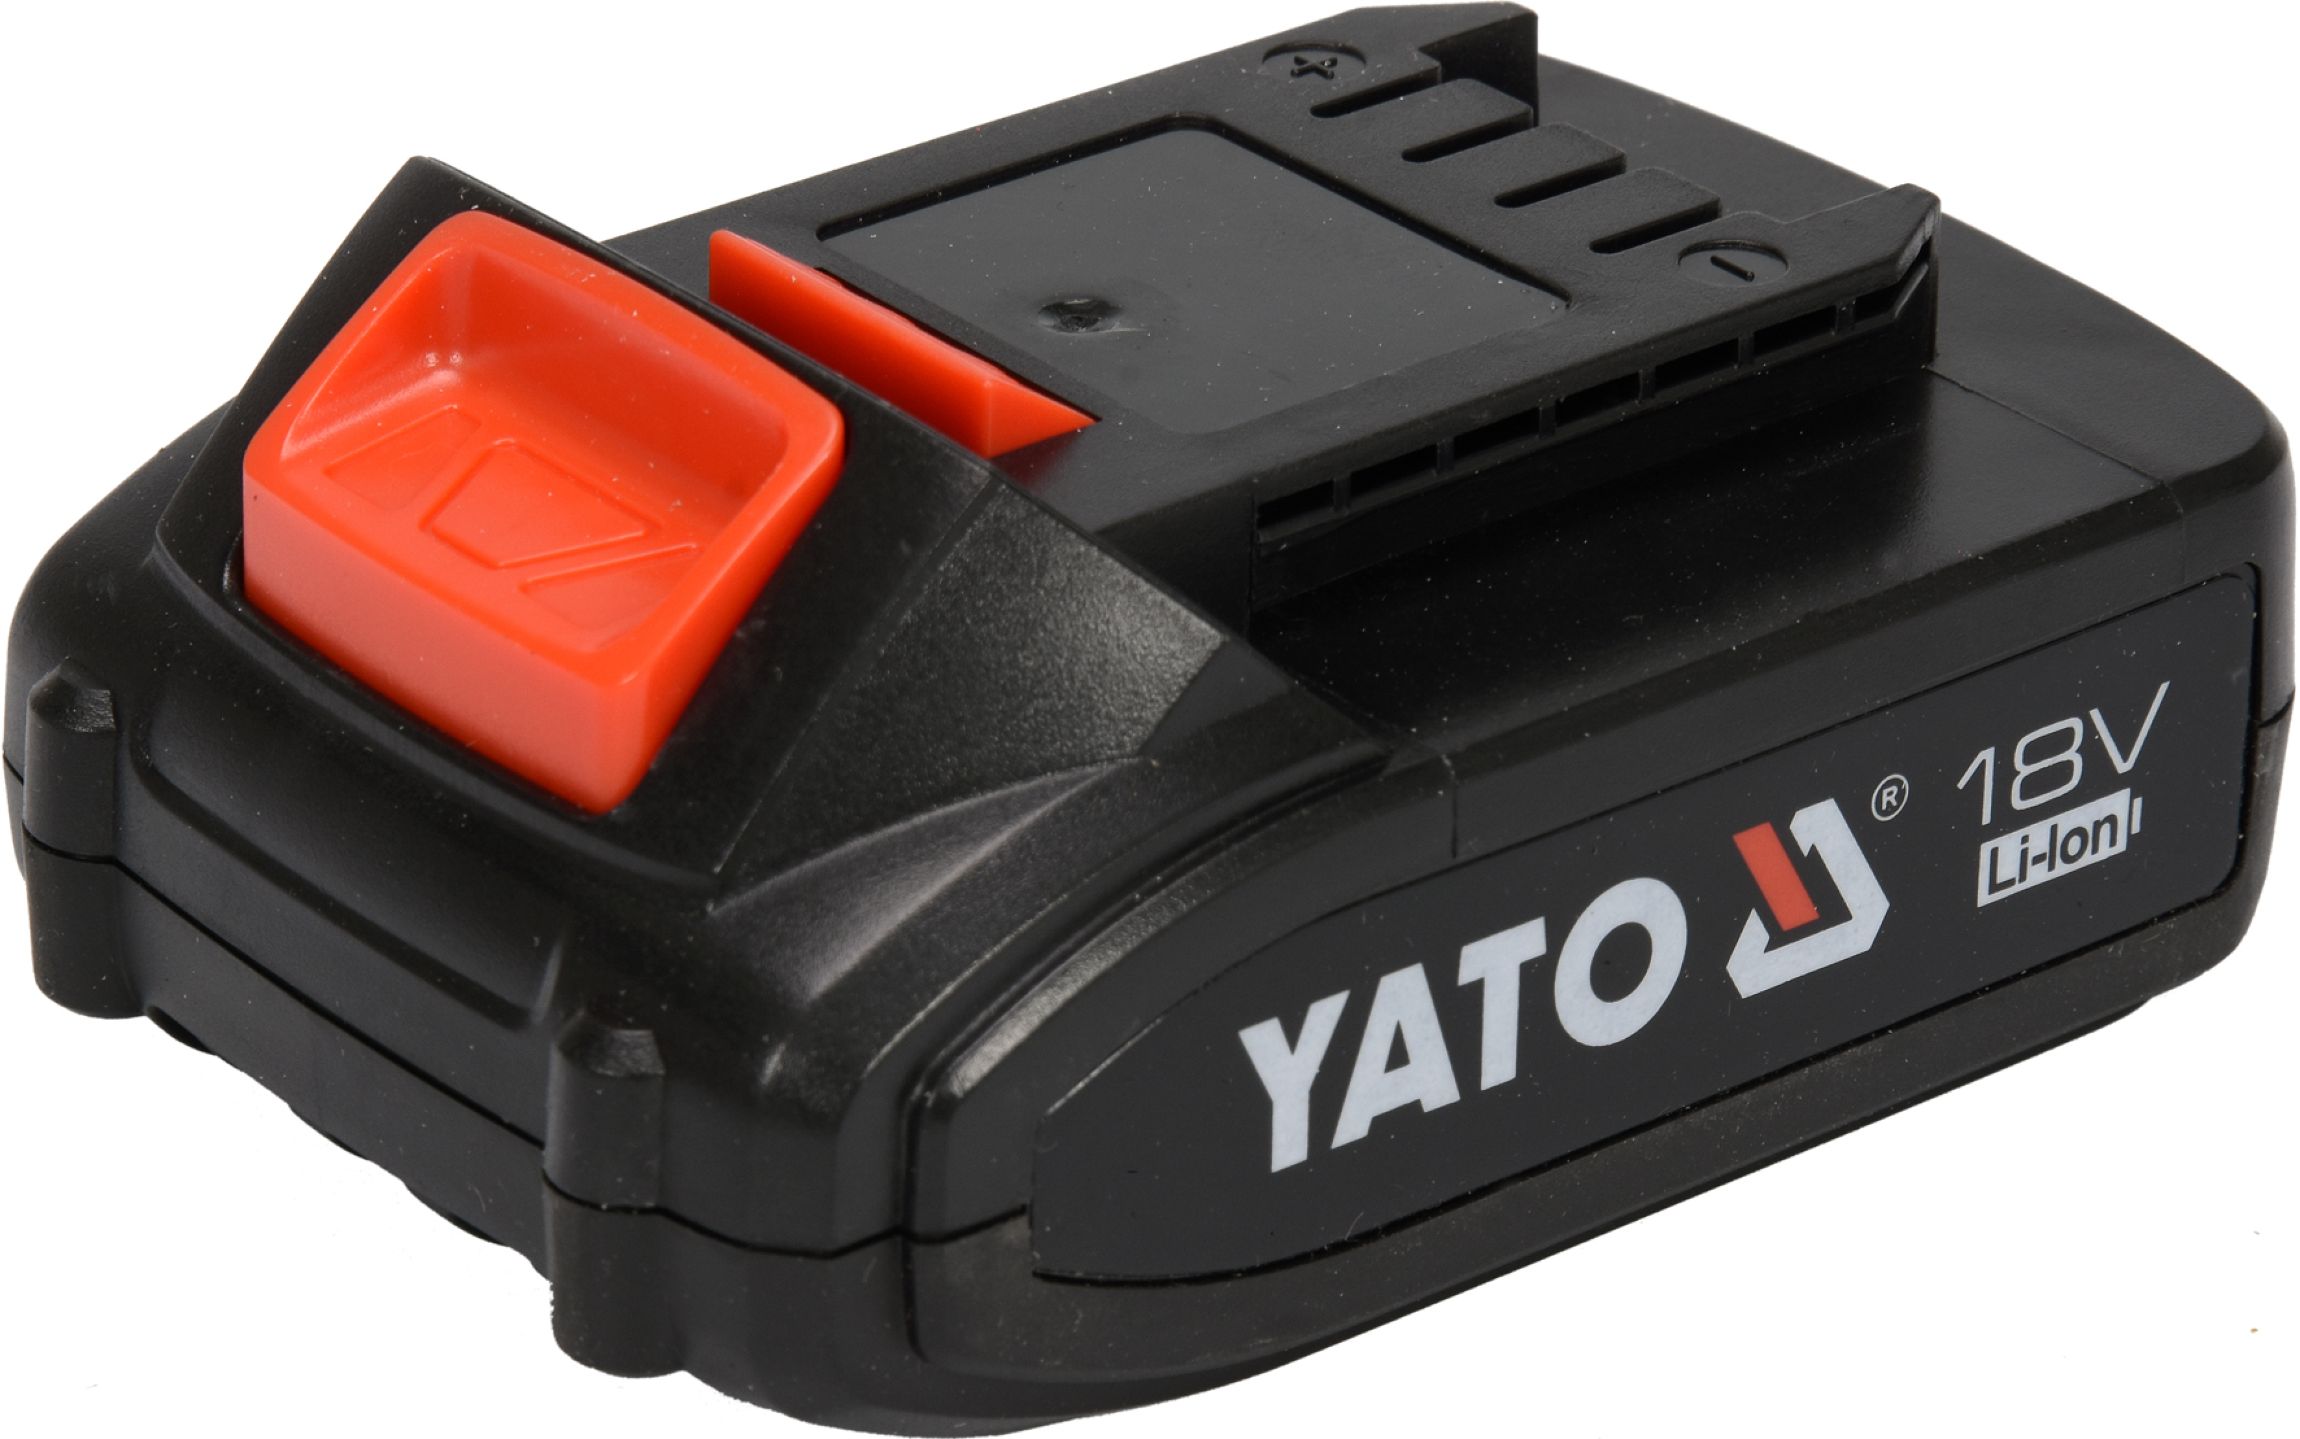 Baterie náhradní 18V Li-ion 2,0 AH (YT-82782, YT-82788,YT-82826) Yato YT-82842 + Dárek, servis bez starostí v hodnotě 300Kč